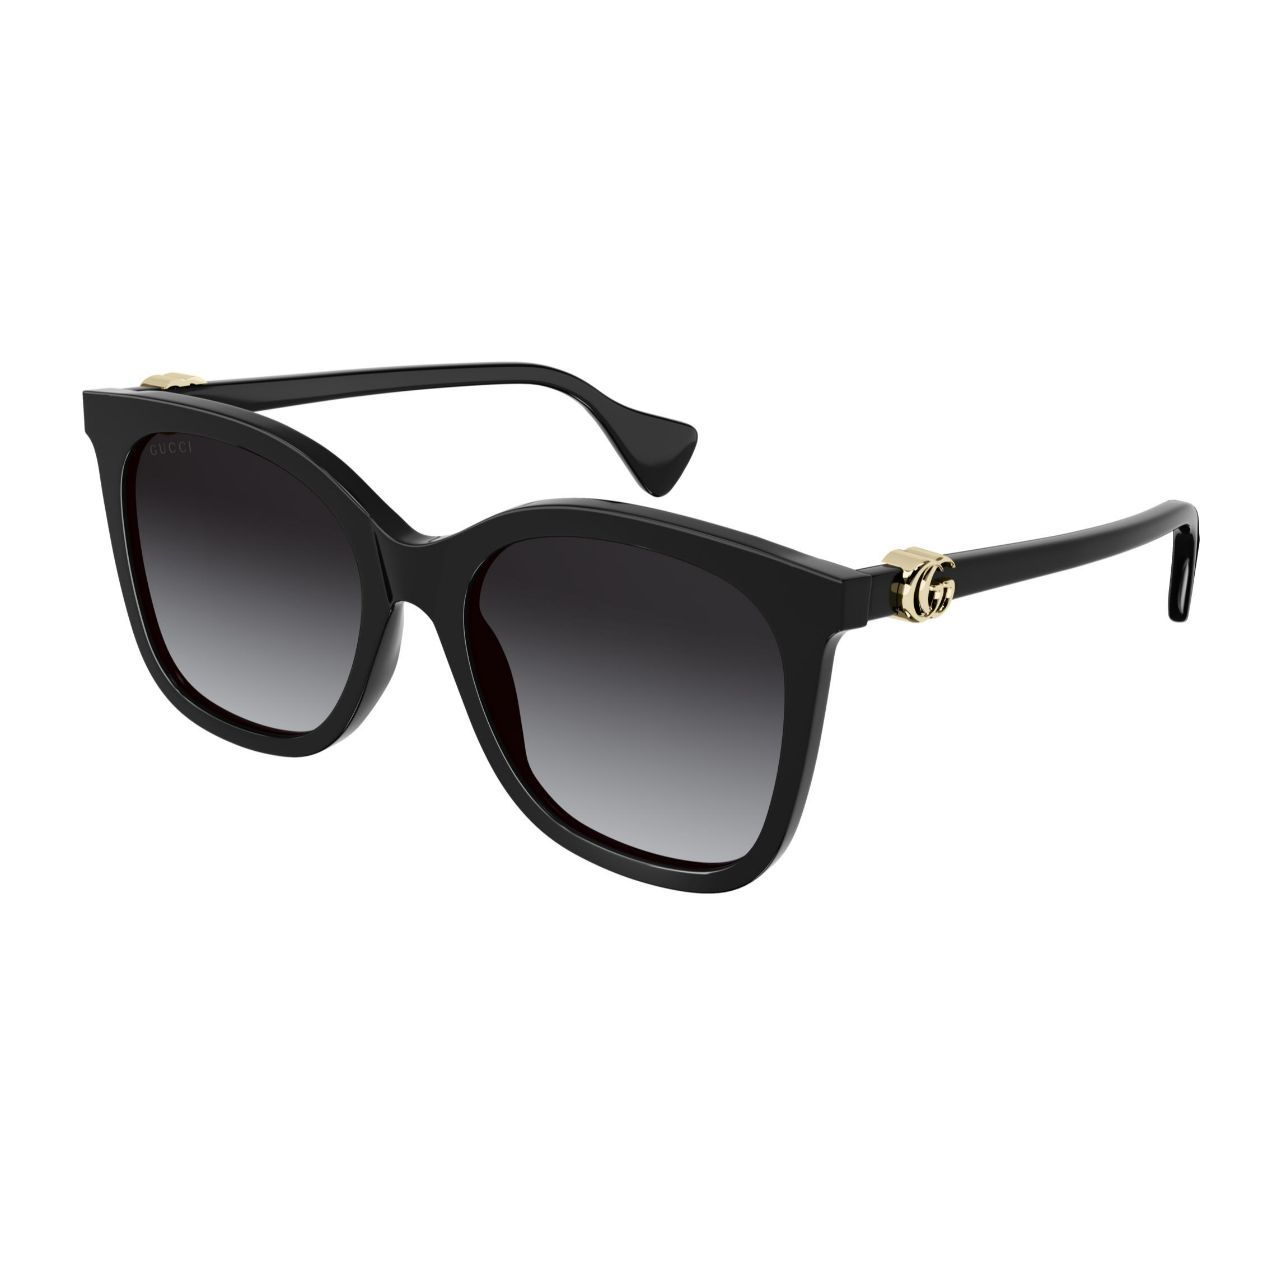 GG1071S Square Sunglasses 1 - size 55